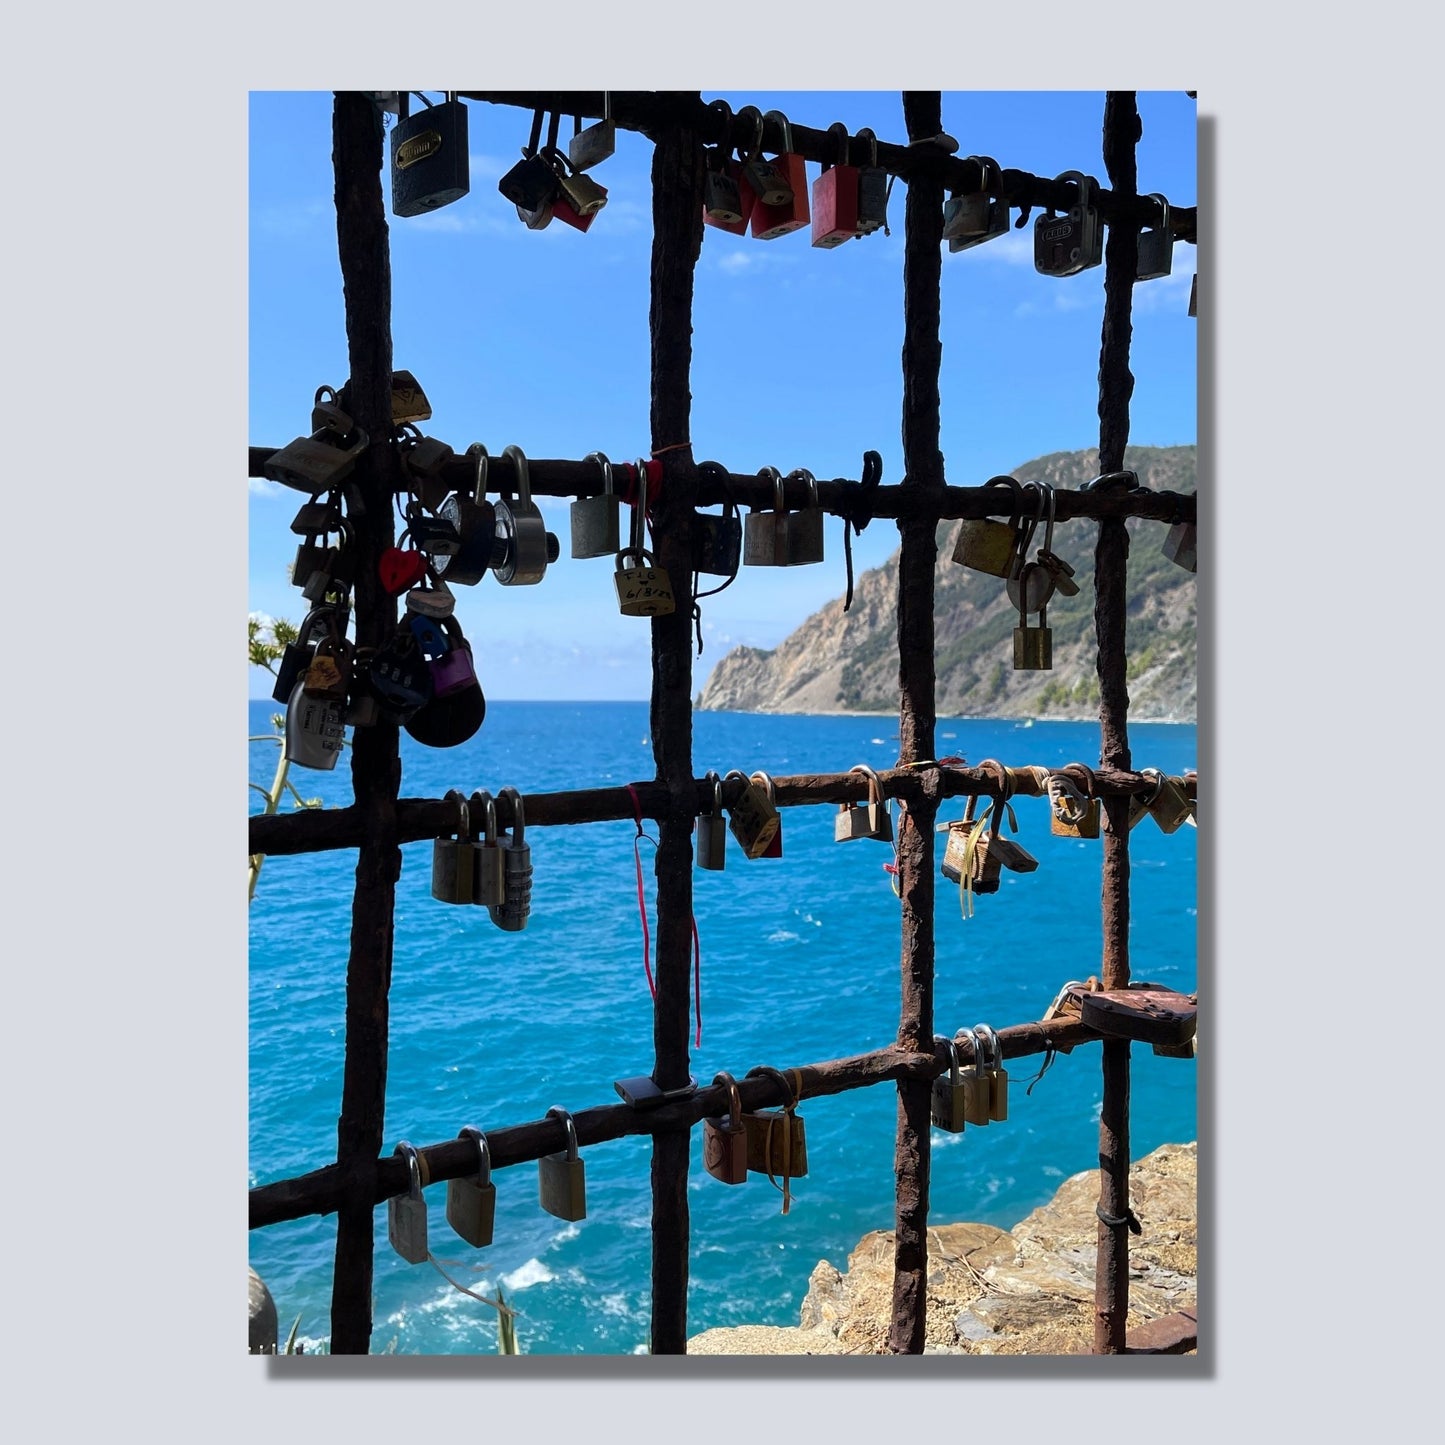 Bildet viser en mur med en åpning med et gitter, der det er hengt opp hengelås med håp om et langt liv i kjærlighet. Gjennom gitteret ses det blåe Middelhavet og klippene som går ned i sjøen. Bildet er på lerret.